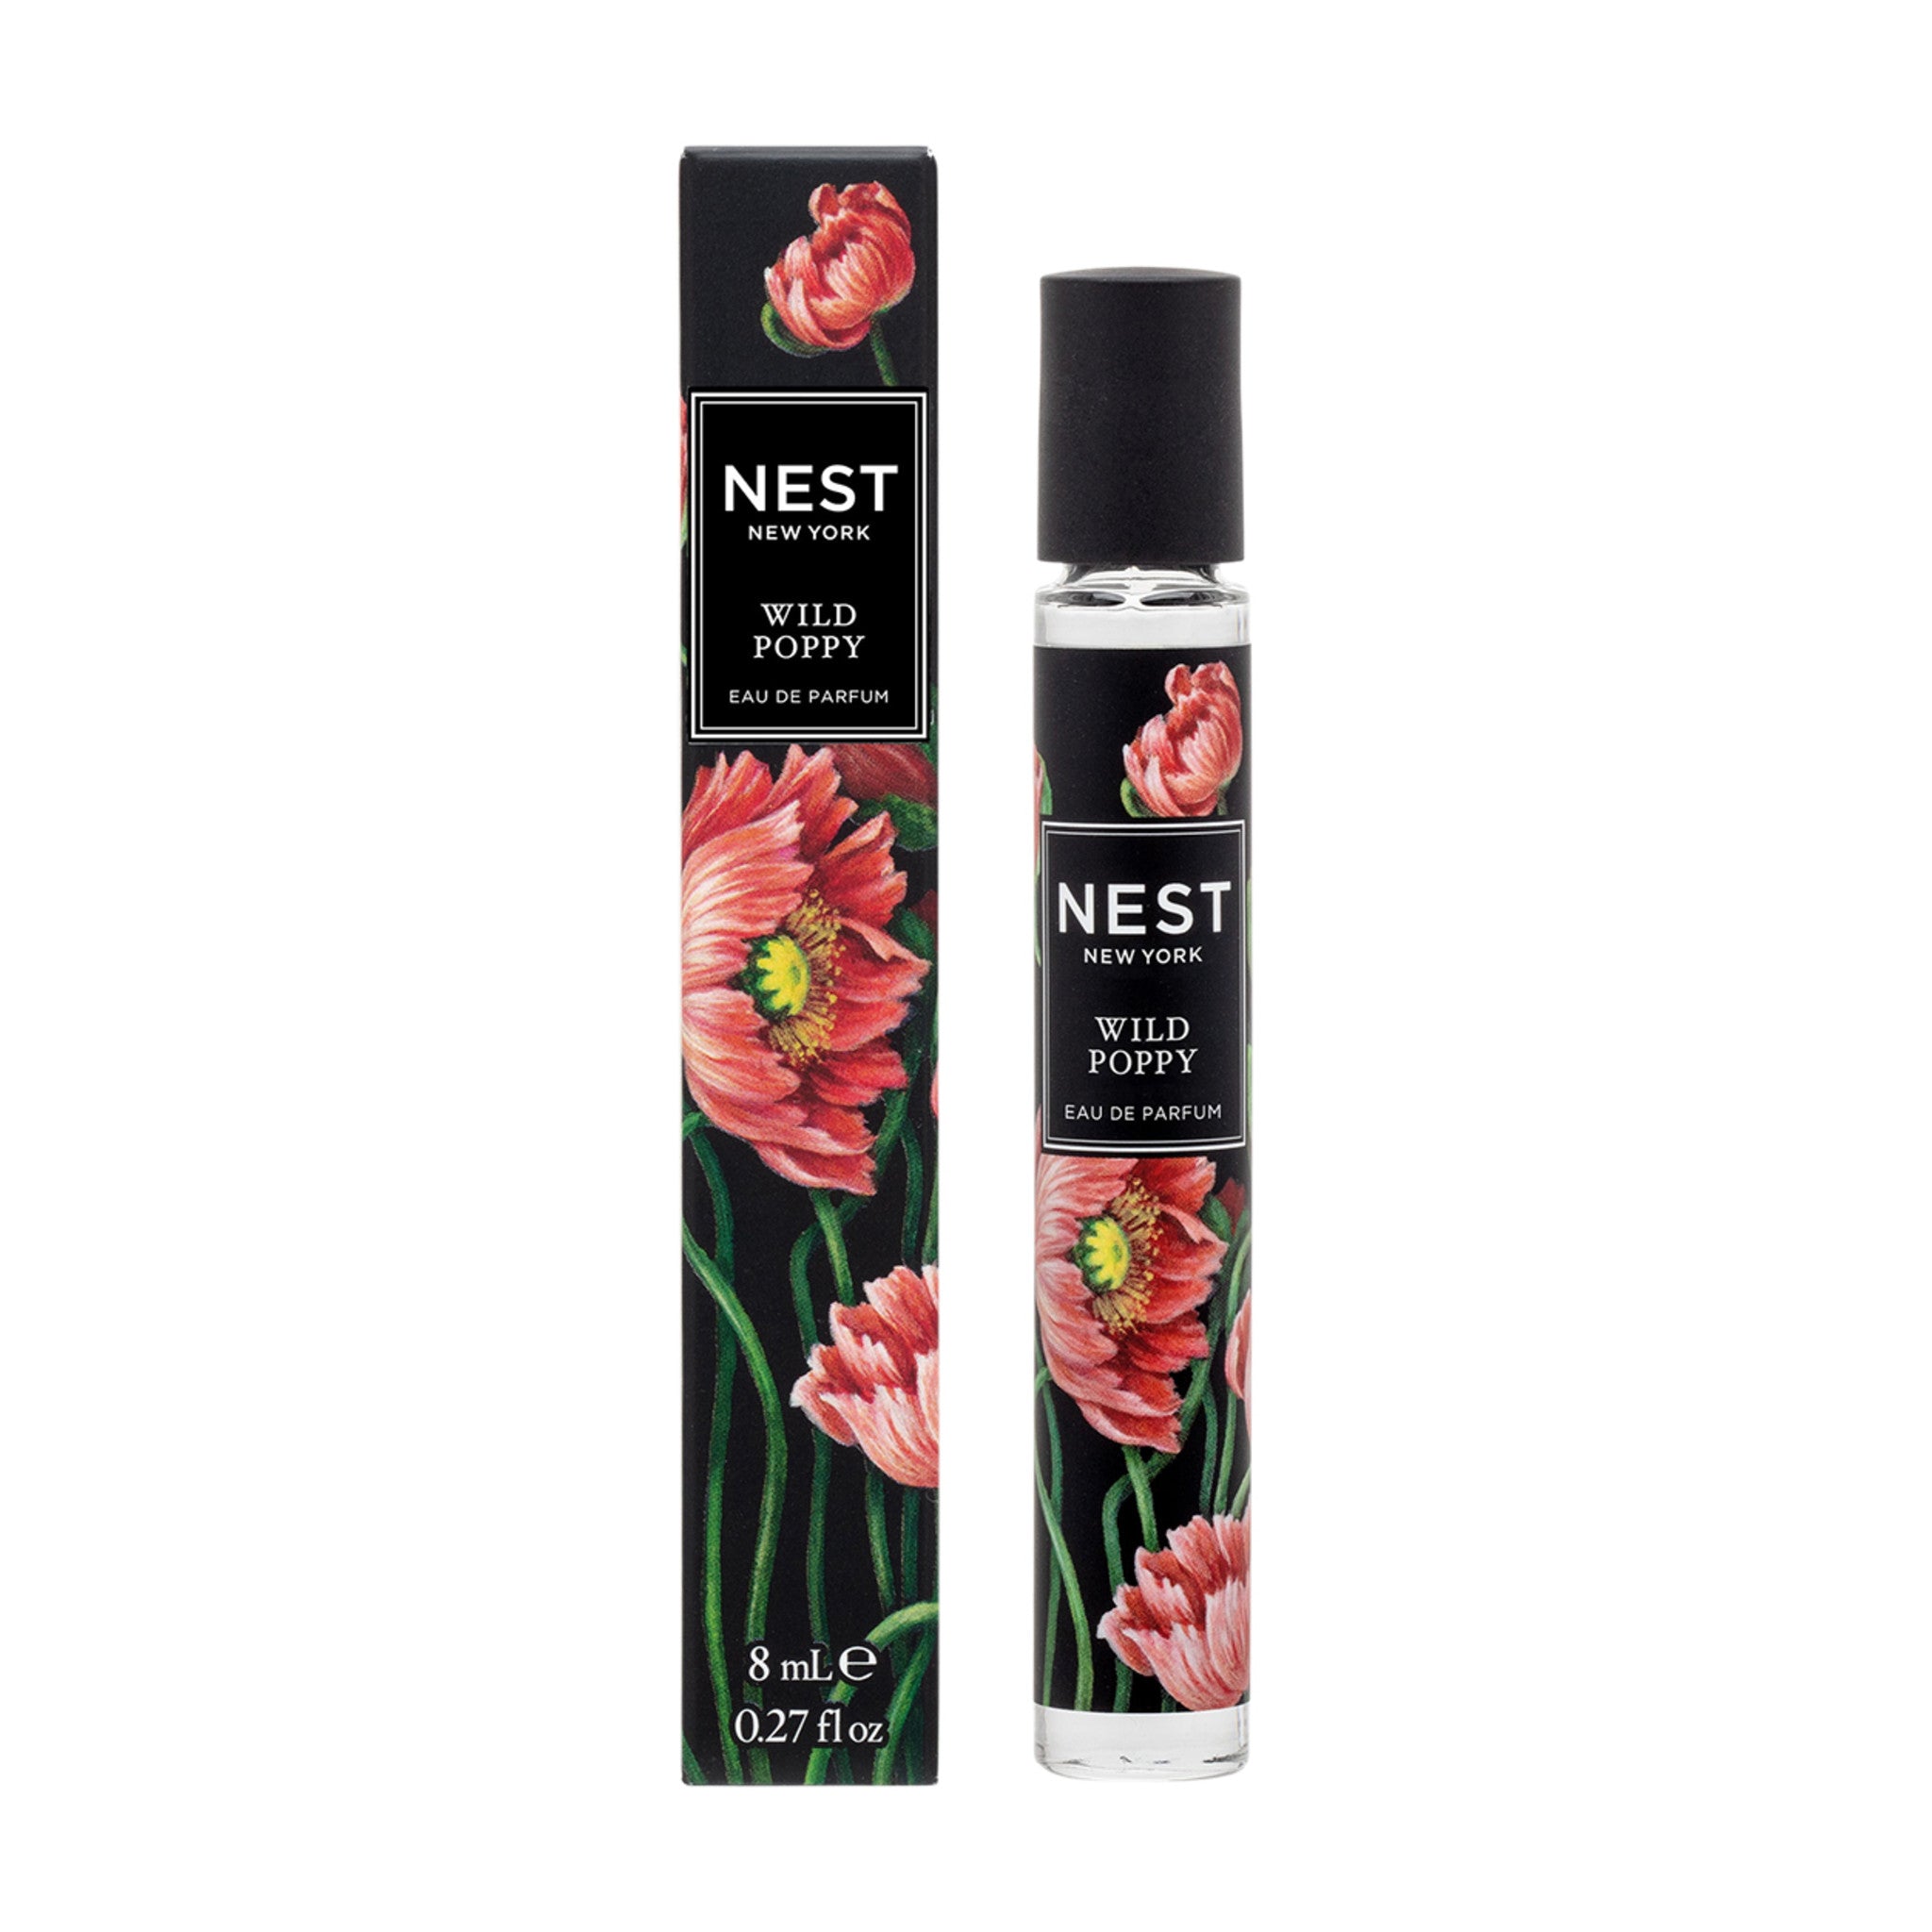 Nest Wild Poppy Eau de Parfum Size variant: 8 ml main image.